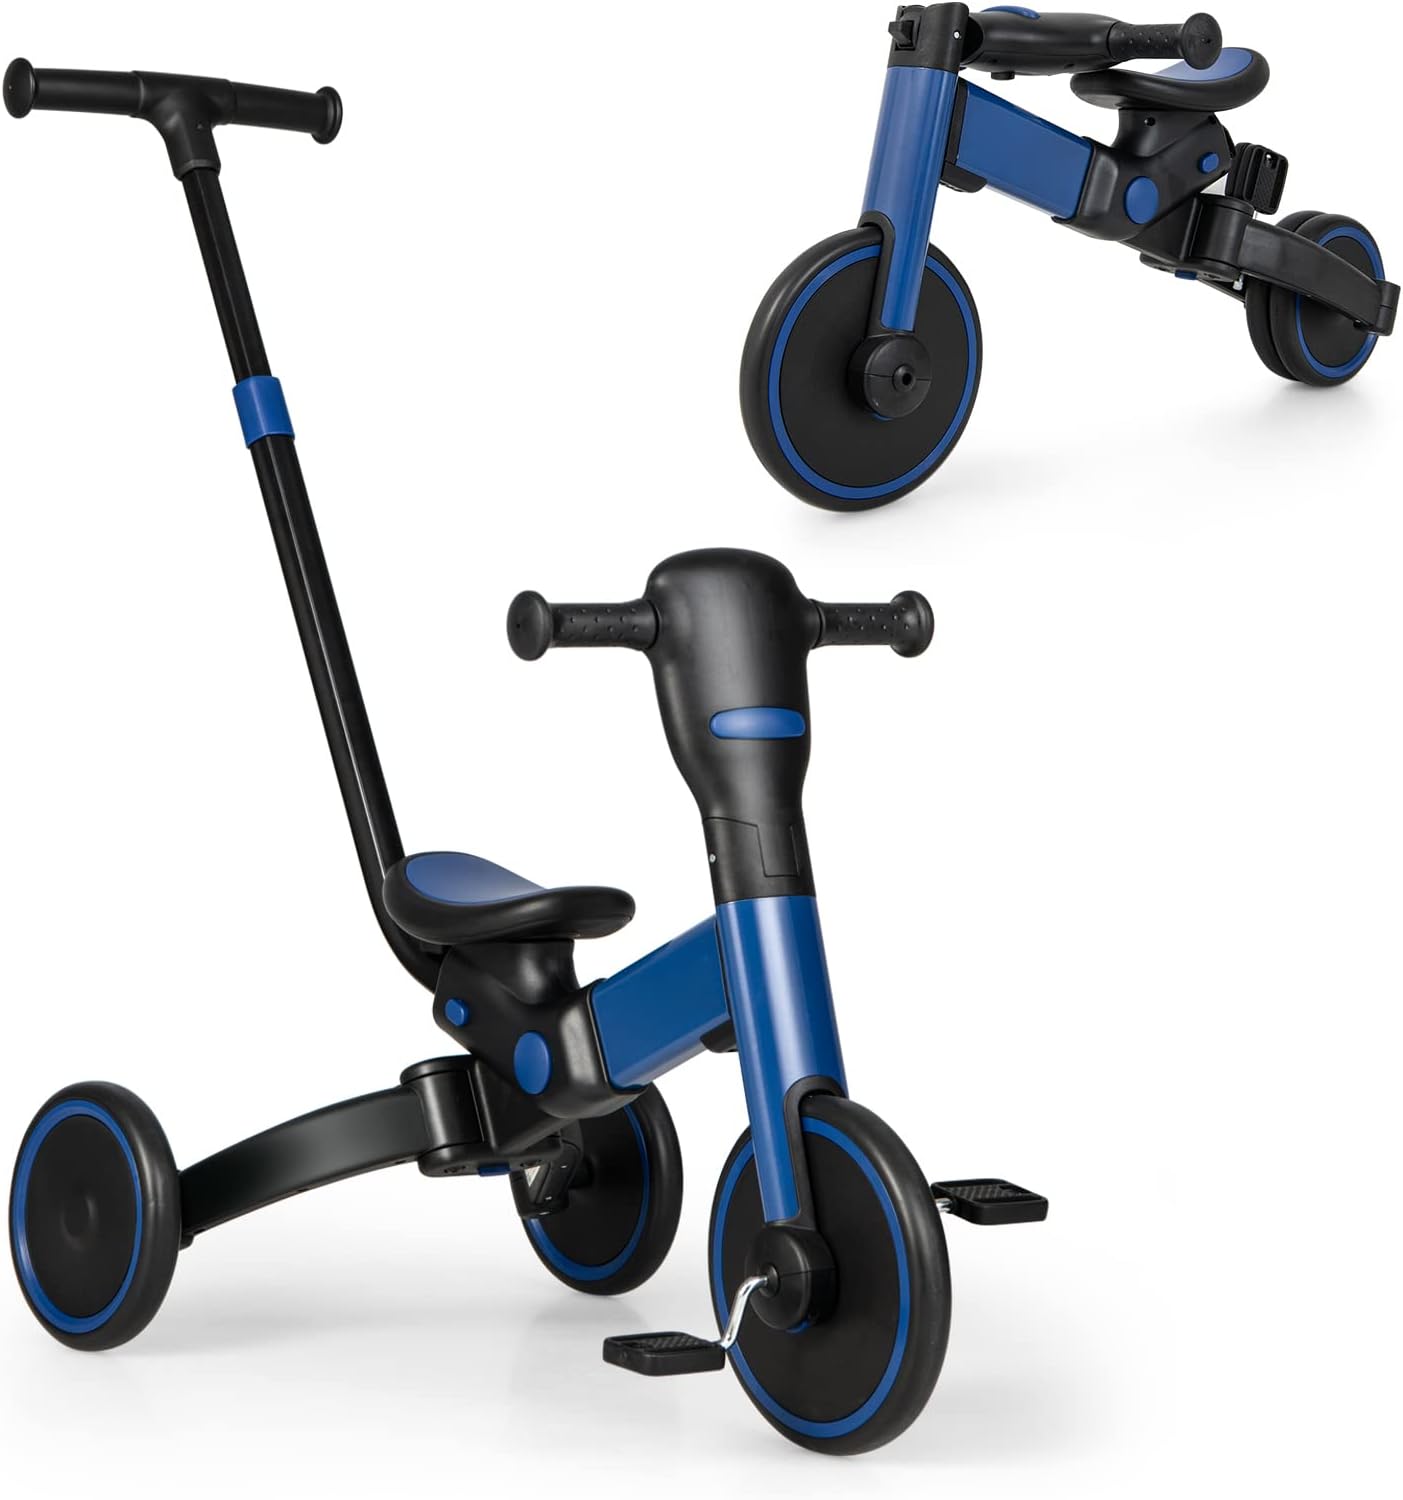 Tricycle enfant évolutif 4 en 1 réglable pliable alu. PP - Bleu